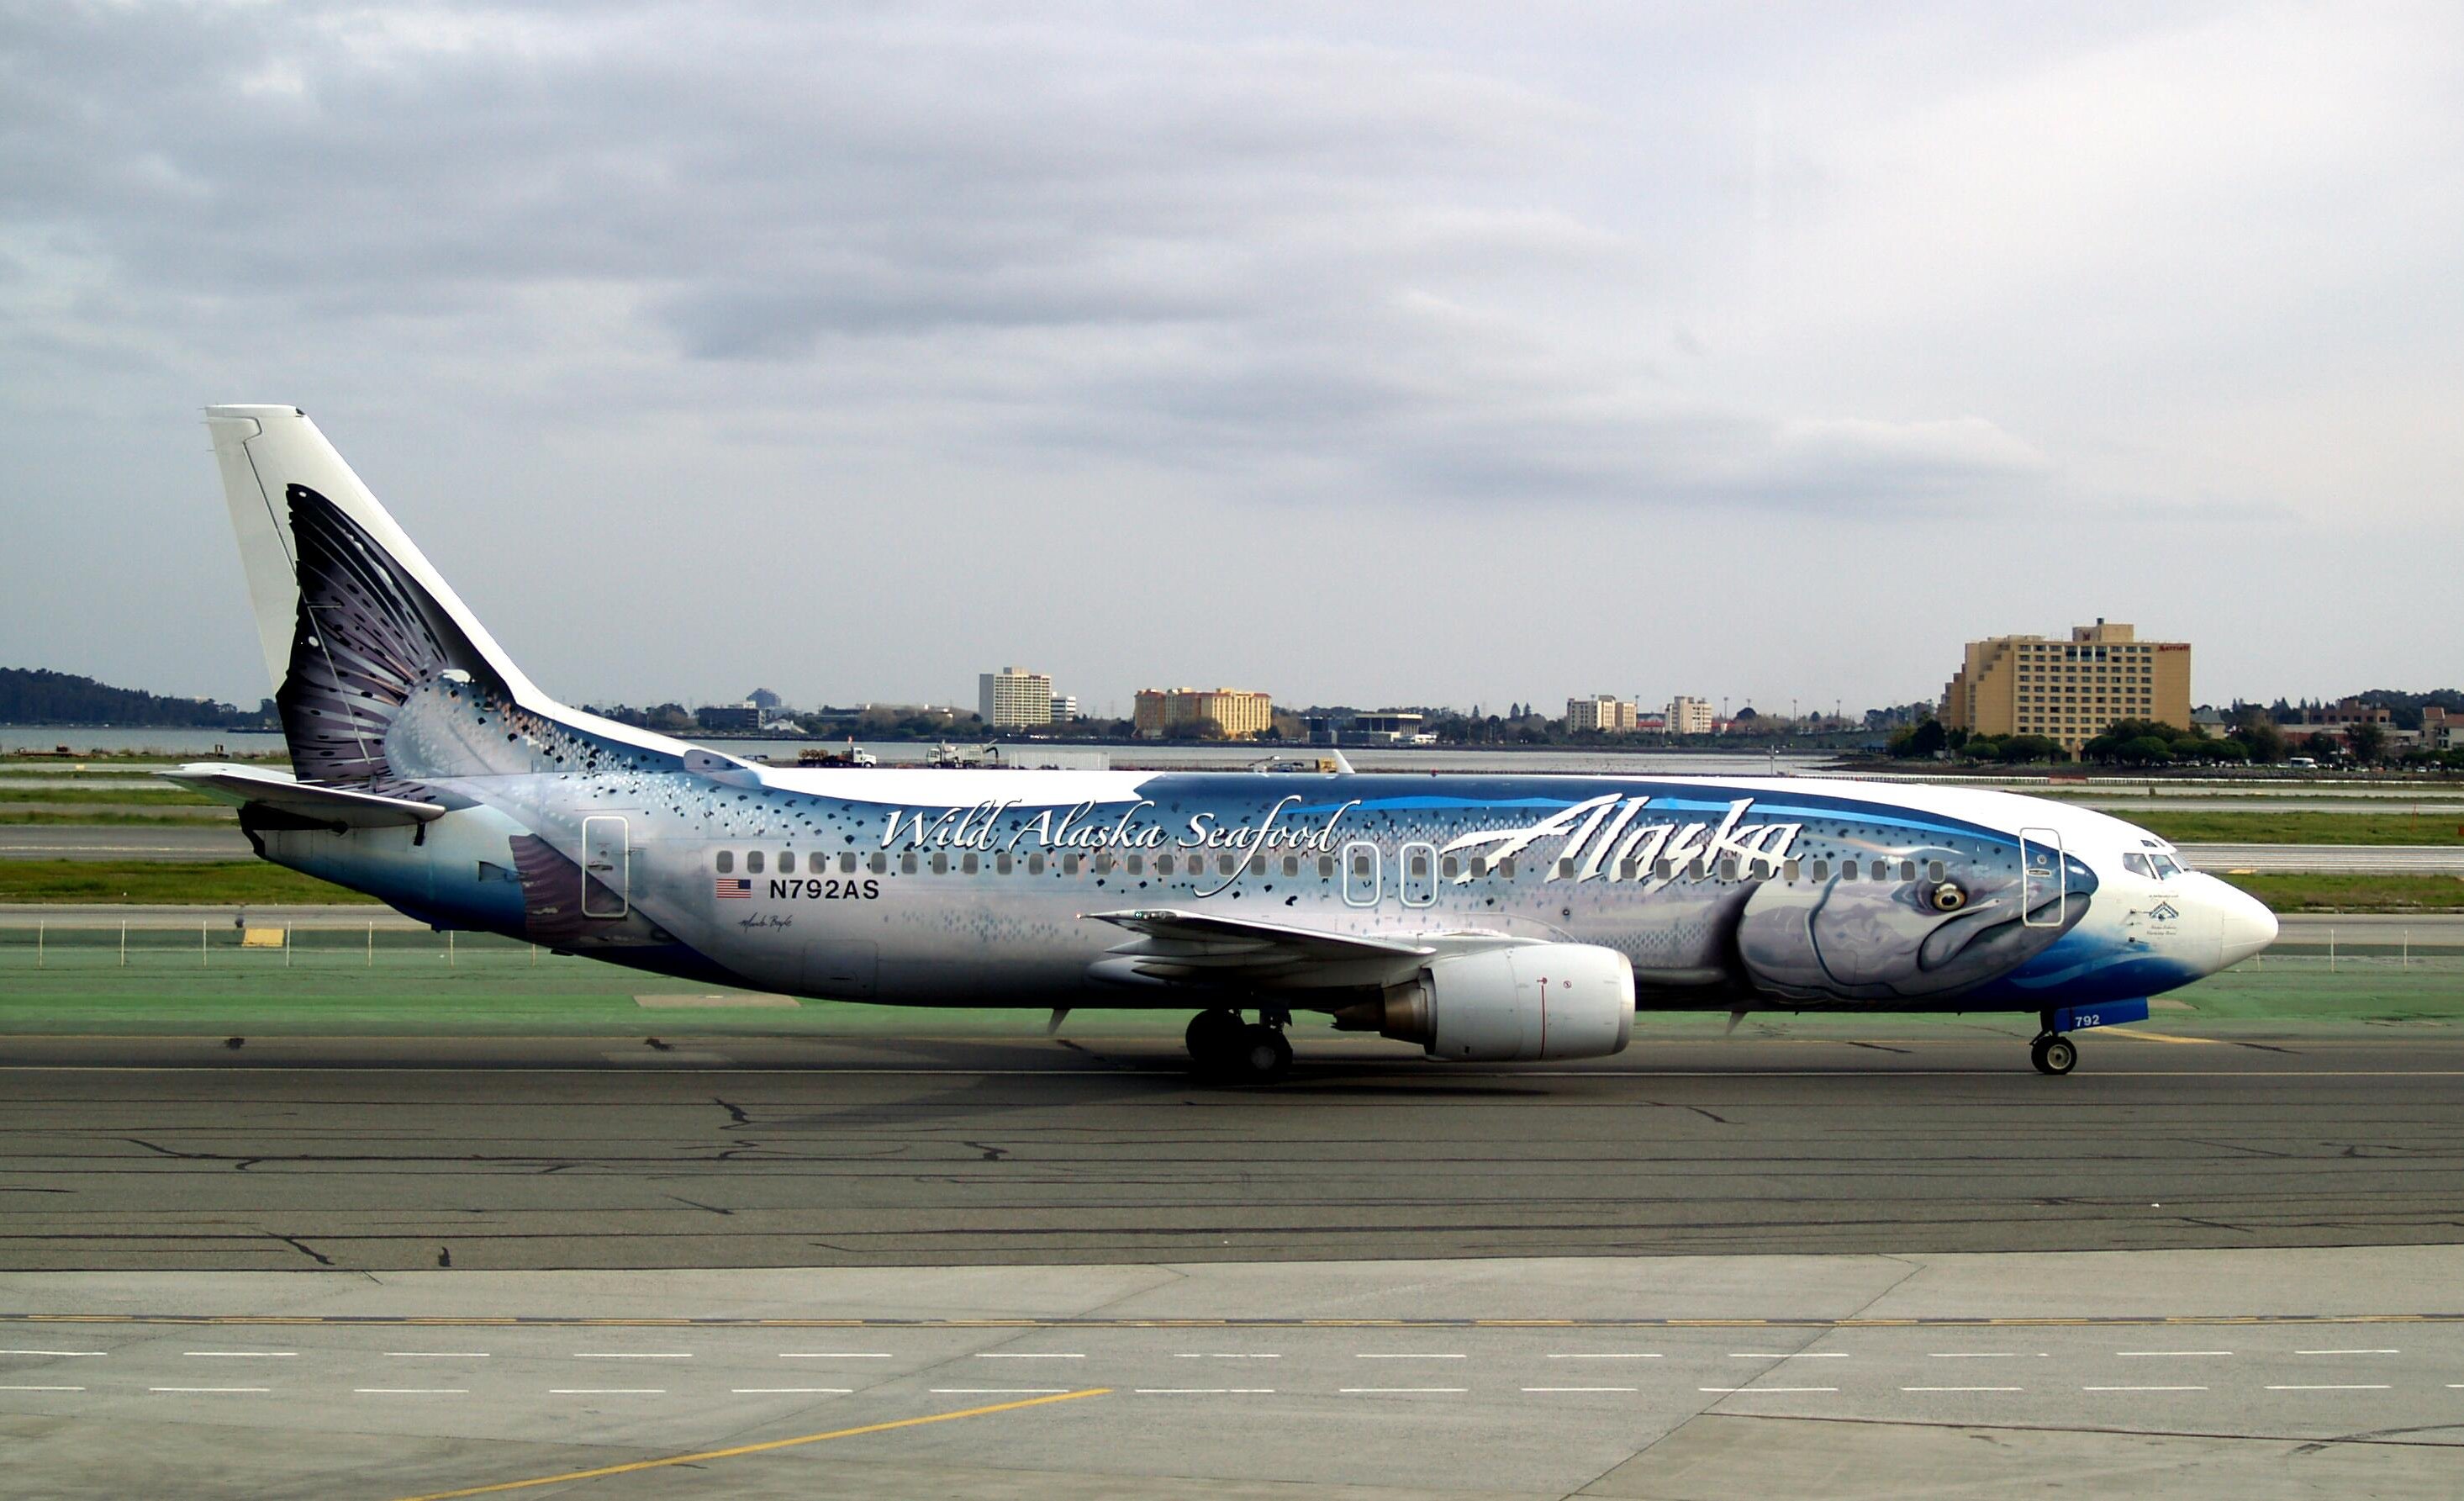 Alaska_Airlines_-Salmon-30-Salmon-_Boeing_737-490_N792AS_65029961785